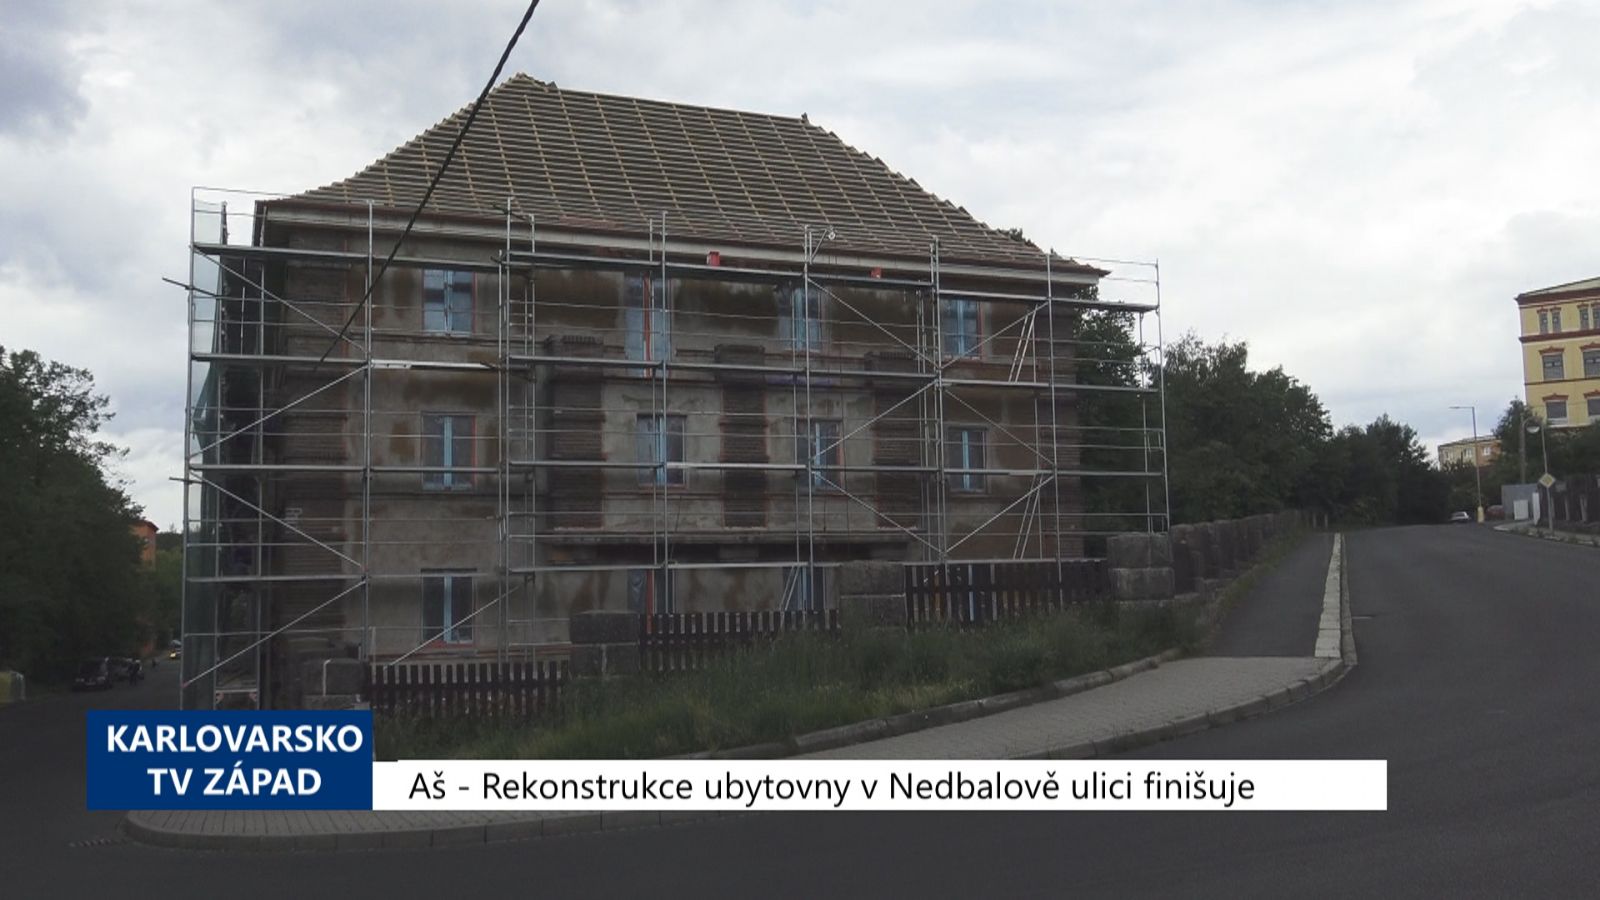 Aš: Rekonstrukce ubytovny v Nedbalově ulici finišuje (TV Západ)